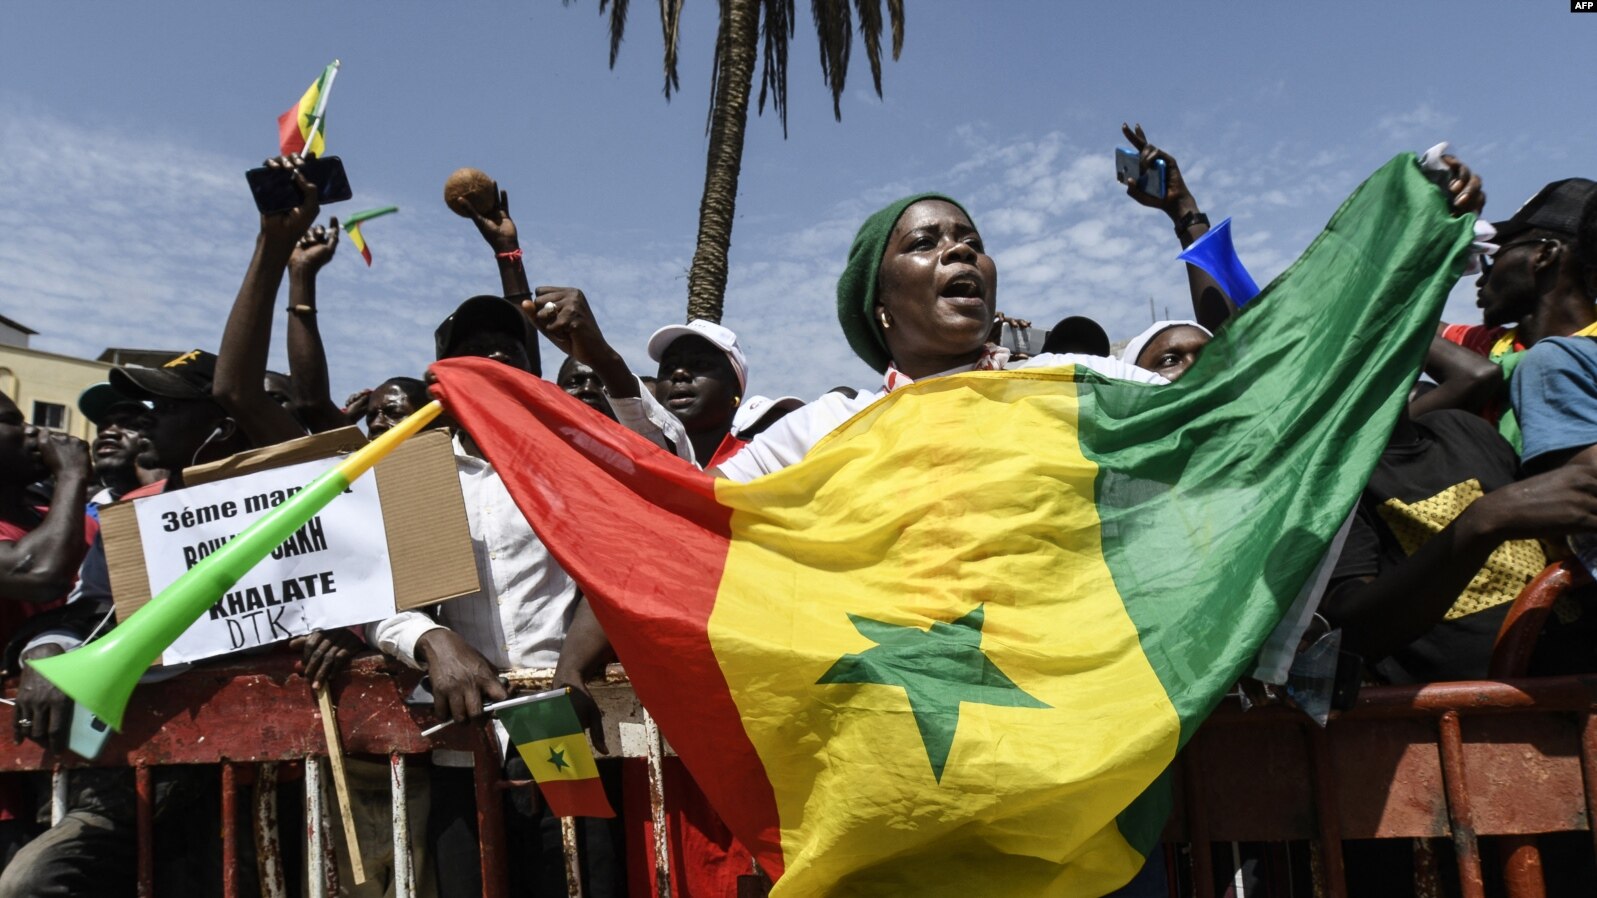 Les autorités interdisent une manifestation prévue à Dakar